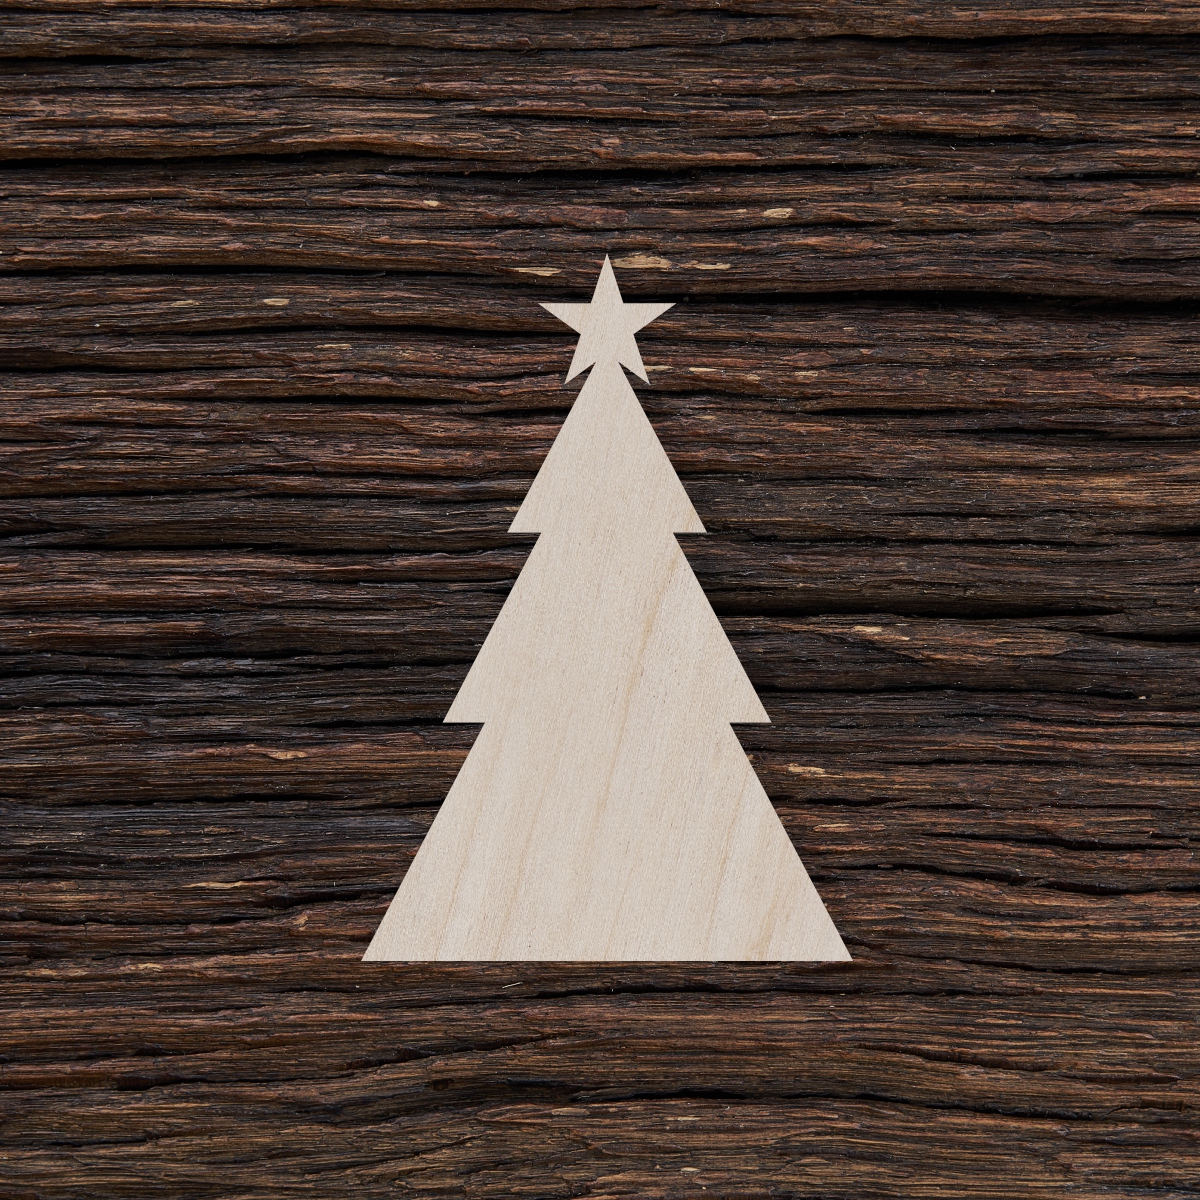 6Trikampis kalėdinis medis - medinis gaminys, pjautas lazeriu - dekoravimui ir dažymui